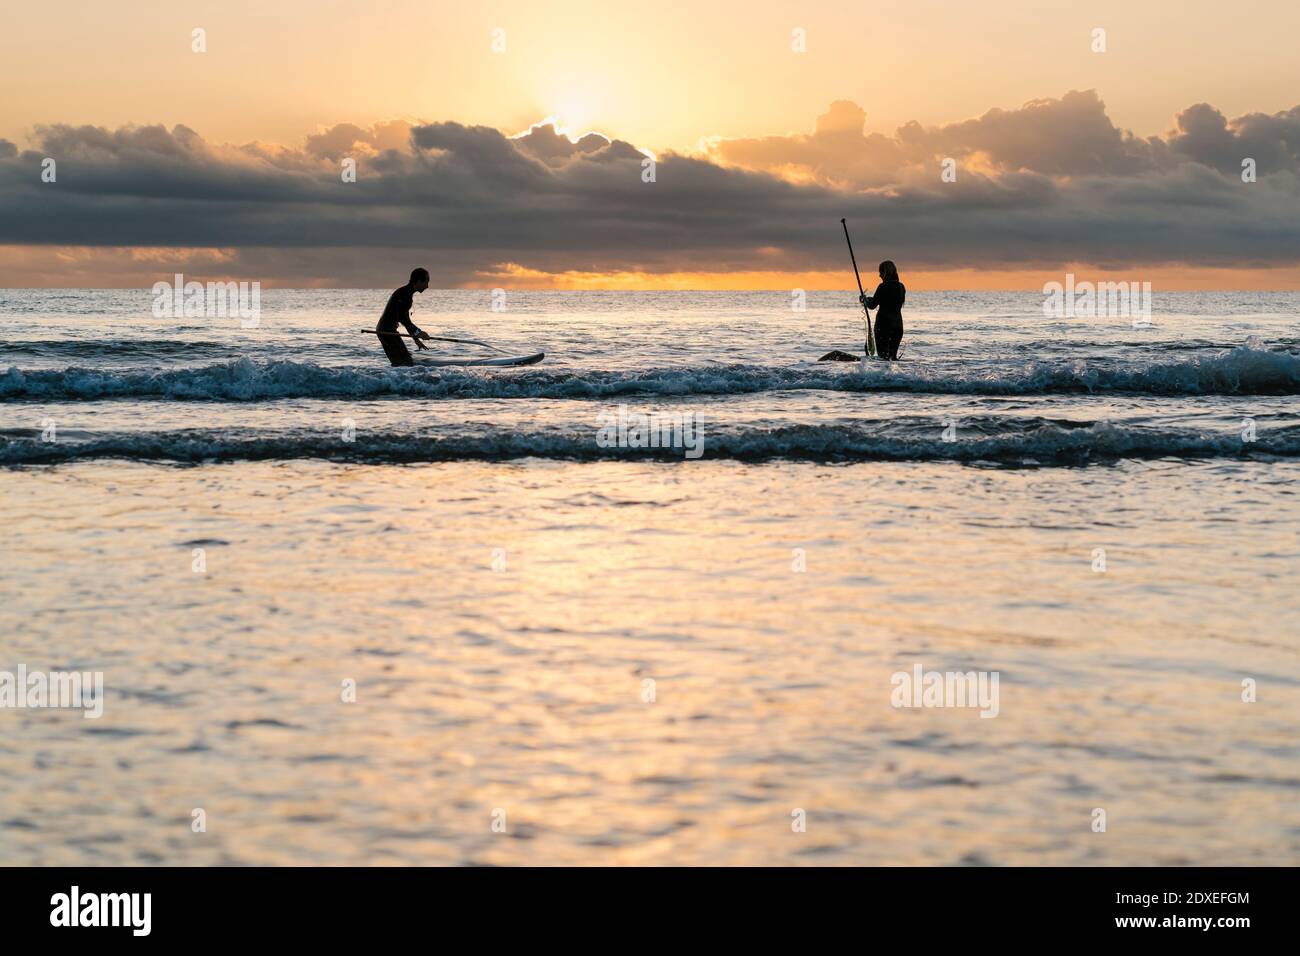 Freunde surfen mit dem Paddleboard auf dem Meer gegen den Himmel in der Dämmerung Stockfoto